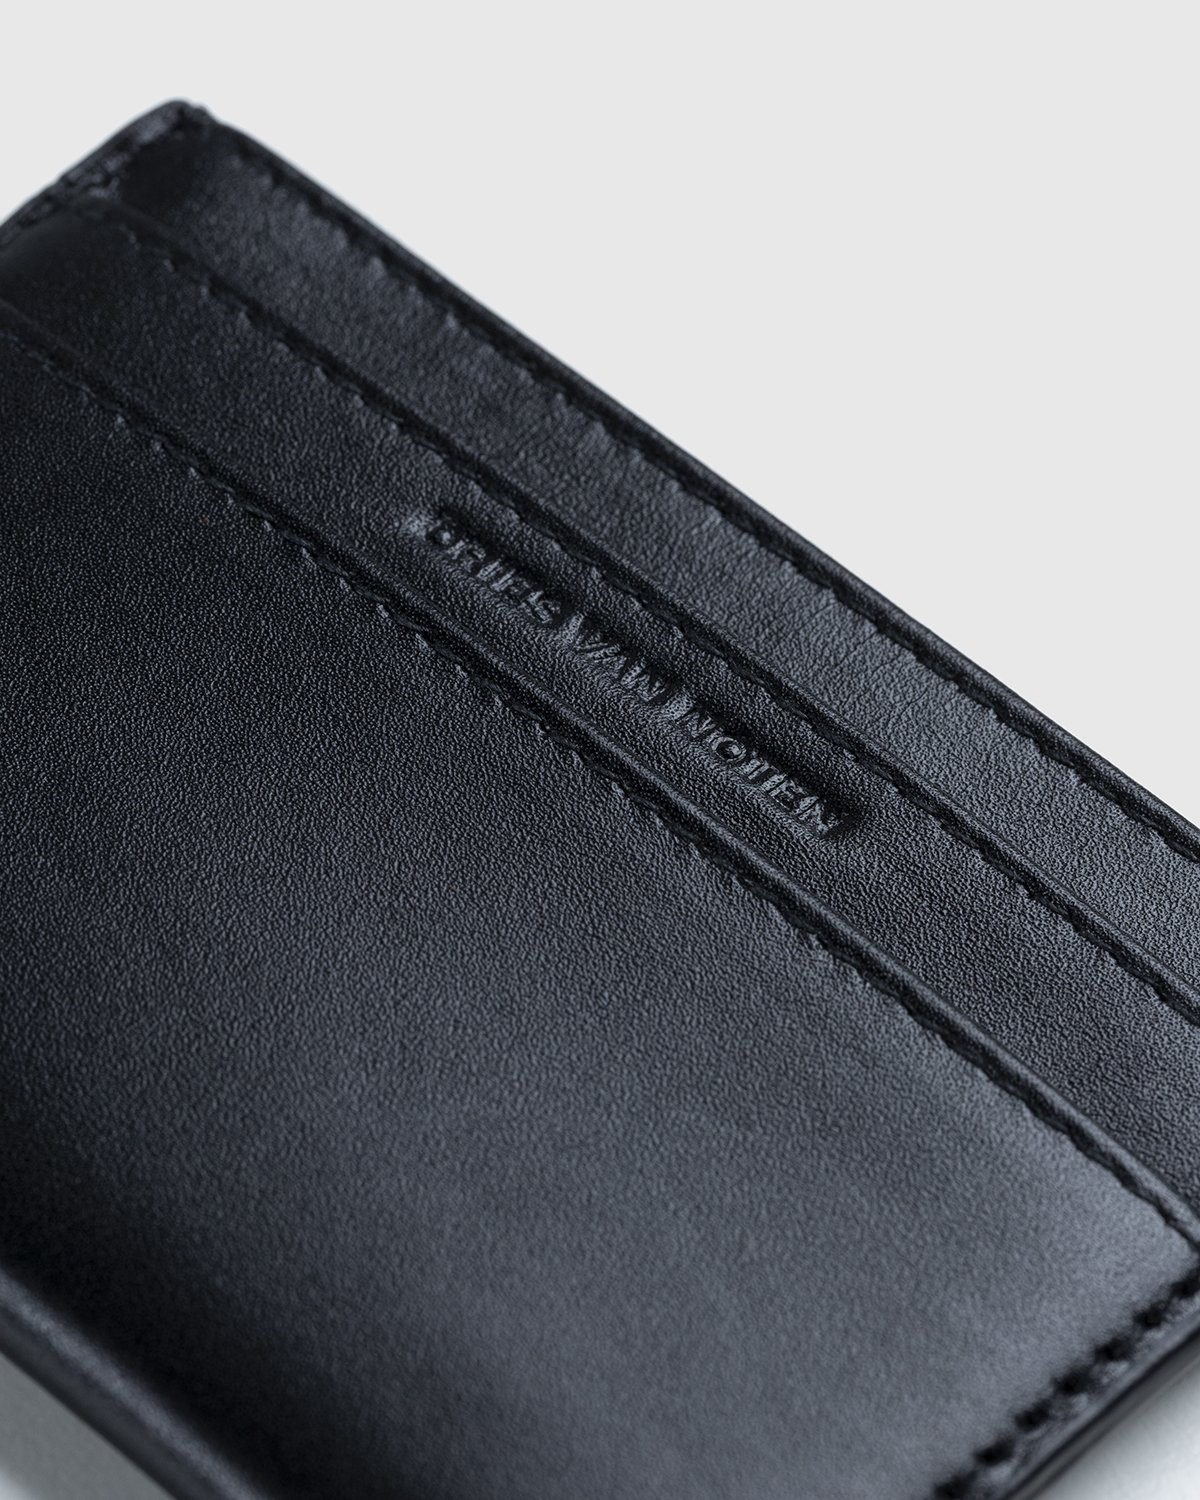 Dries van Noten – Leather Card Holder Black | Highsnobiety Shop